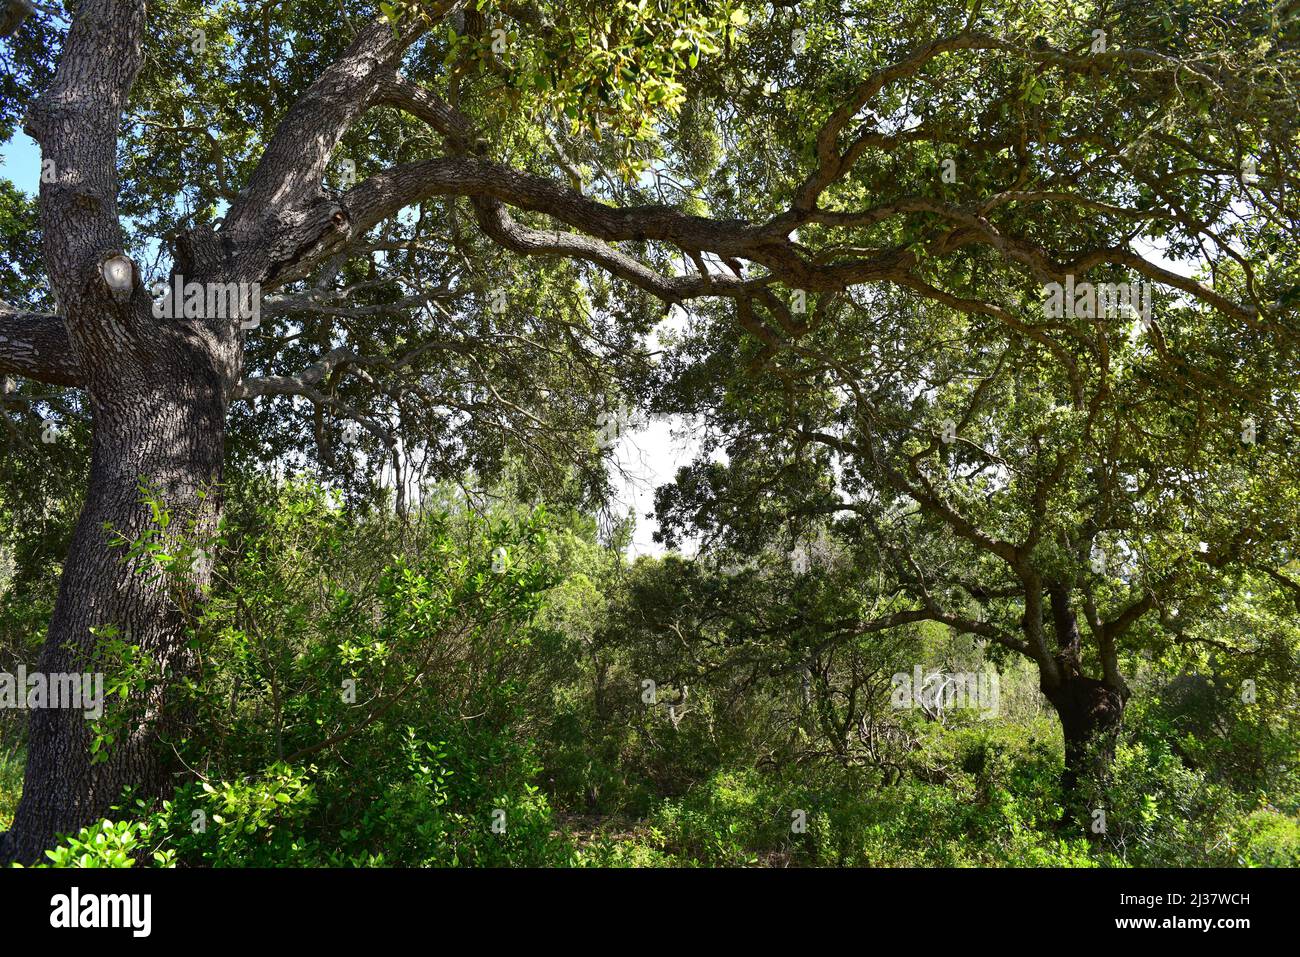 Le chêne d'Evergreen (Quercus ilex ilex) est un arbre à feuilles persistantes originaire du sud de l'Europe. Cette photo a été prise à Minorque, Iles Baléares, Espagne. Banque D'Images